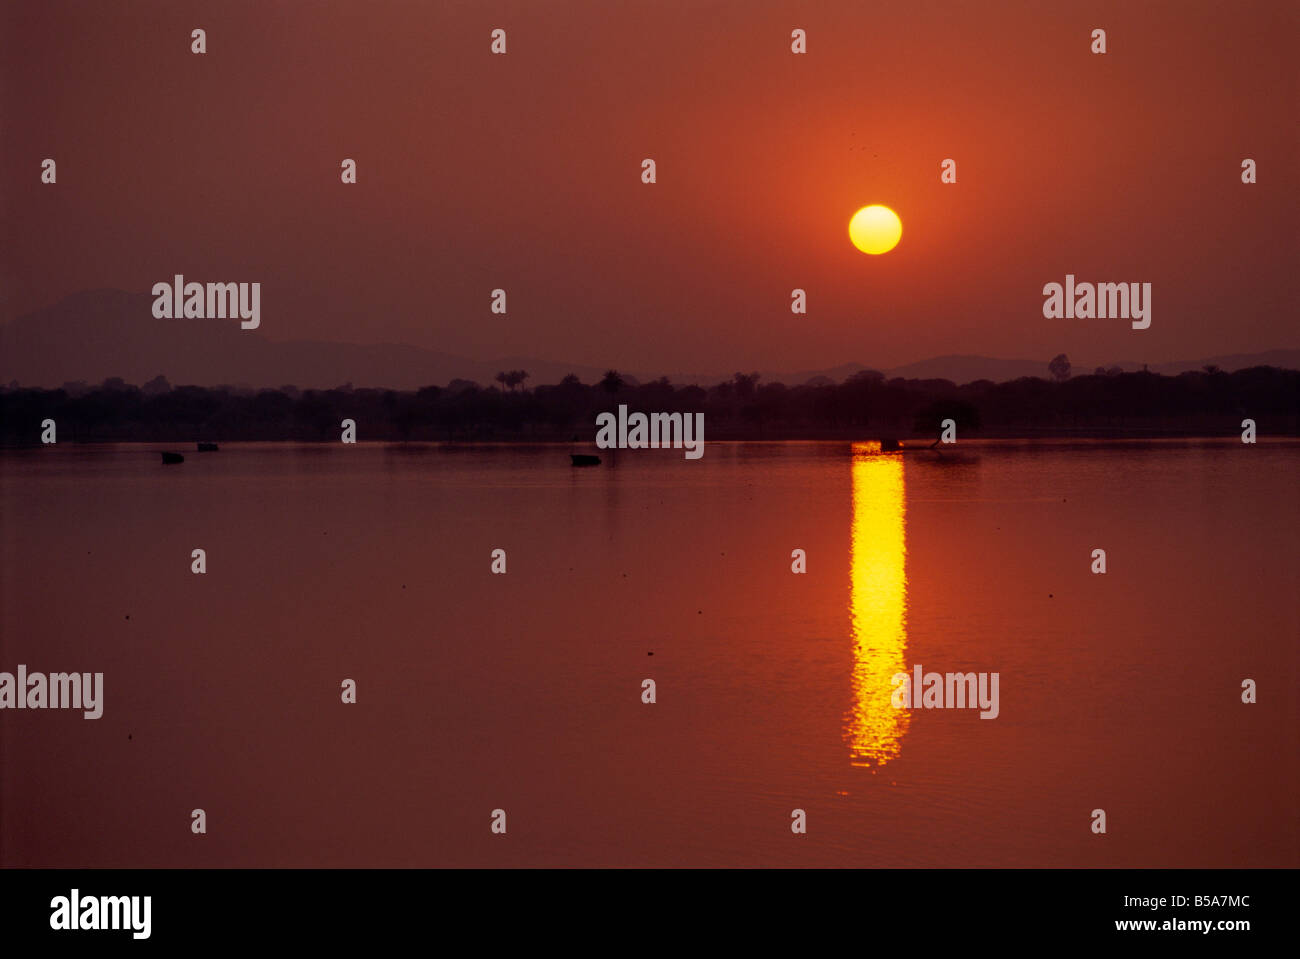 Sonnenuntergang über See erstellt von dam Deogarh Rajasthan Staat Indien Asien Stockfoto